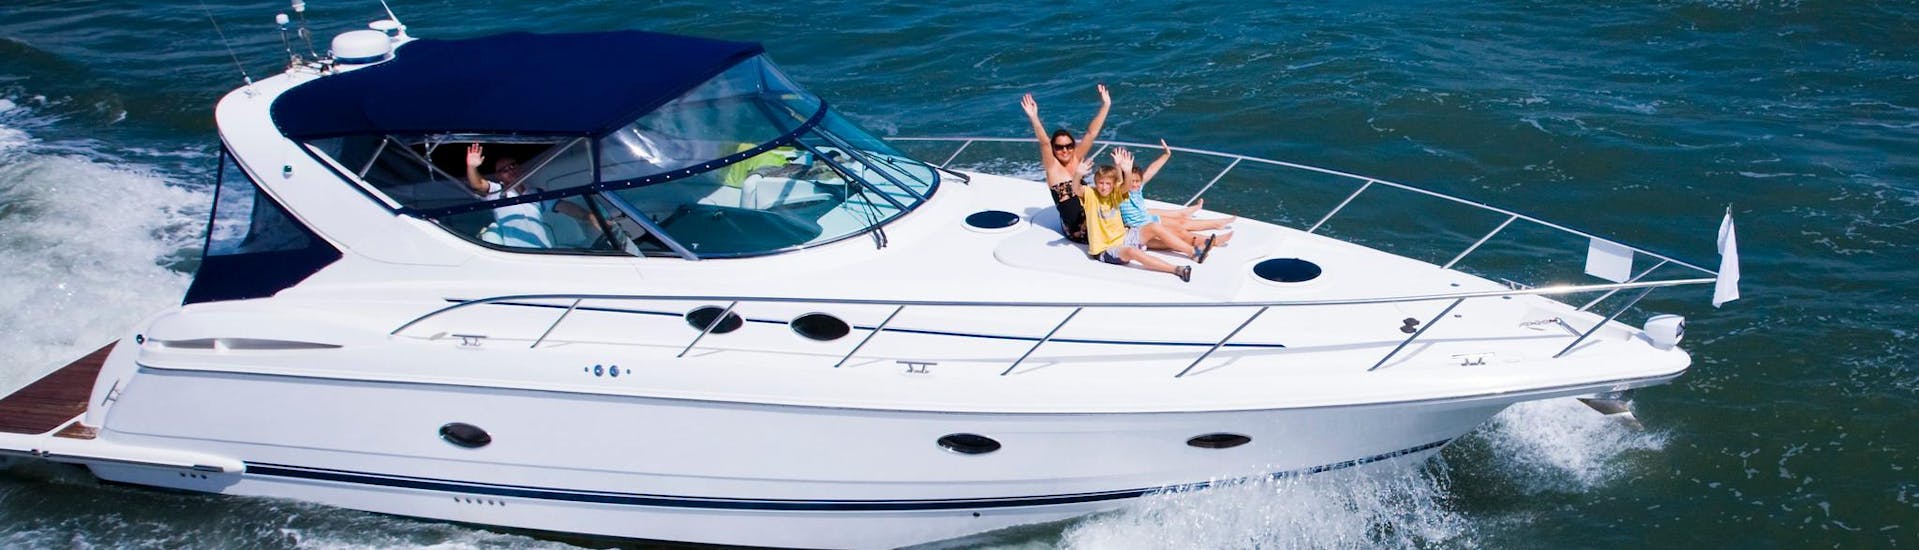 Une mère et deux enfants s'amusant lors d'une balade en yacht